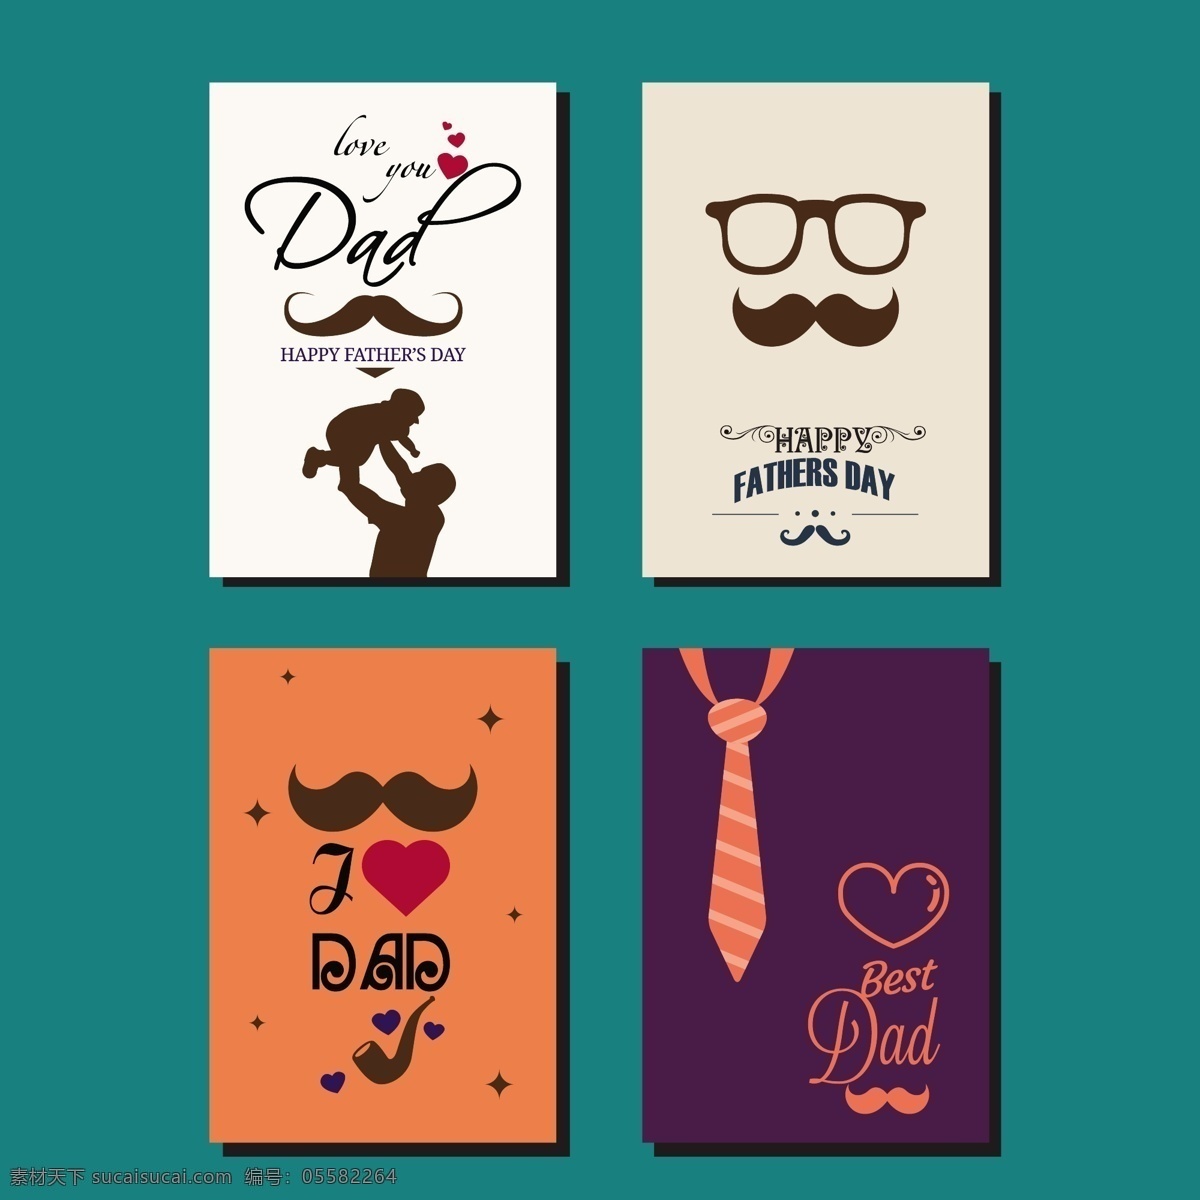 父亲节 元素 矢量图 广告背景 广告 背景 背景素材 底纹背景 矢量 胡子 眼镜 爱心 领带 创意 卡片